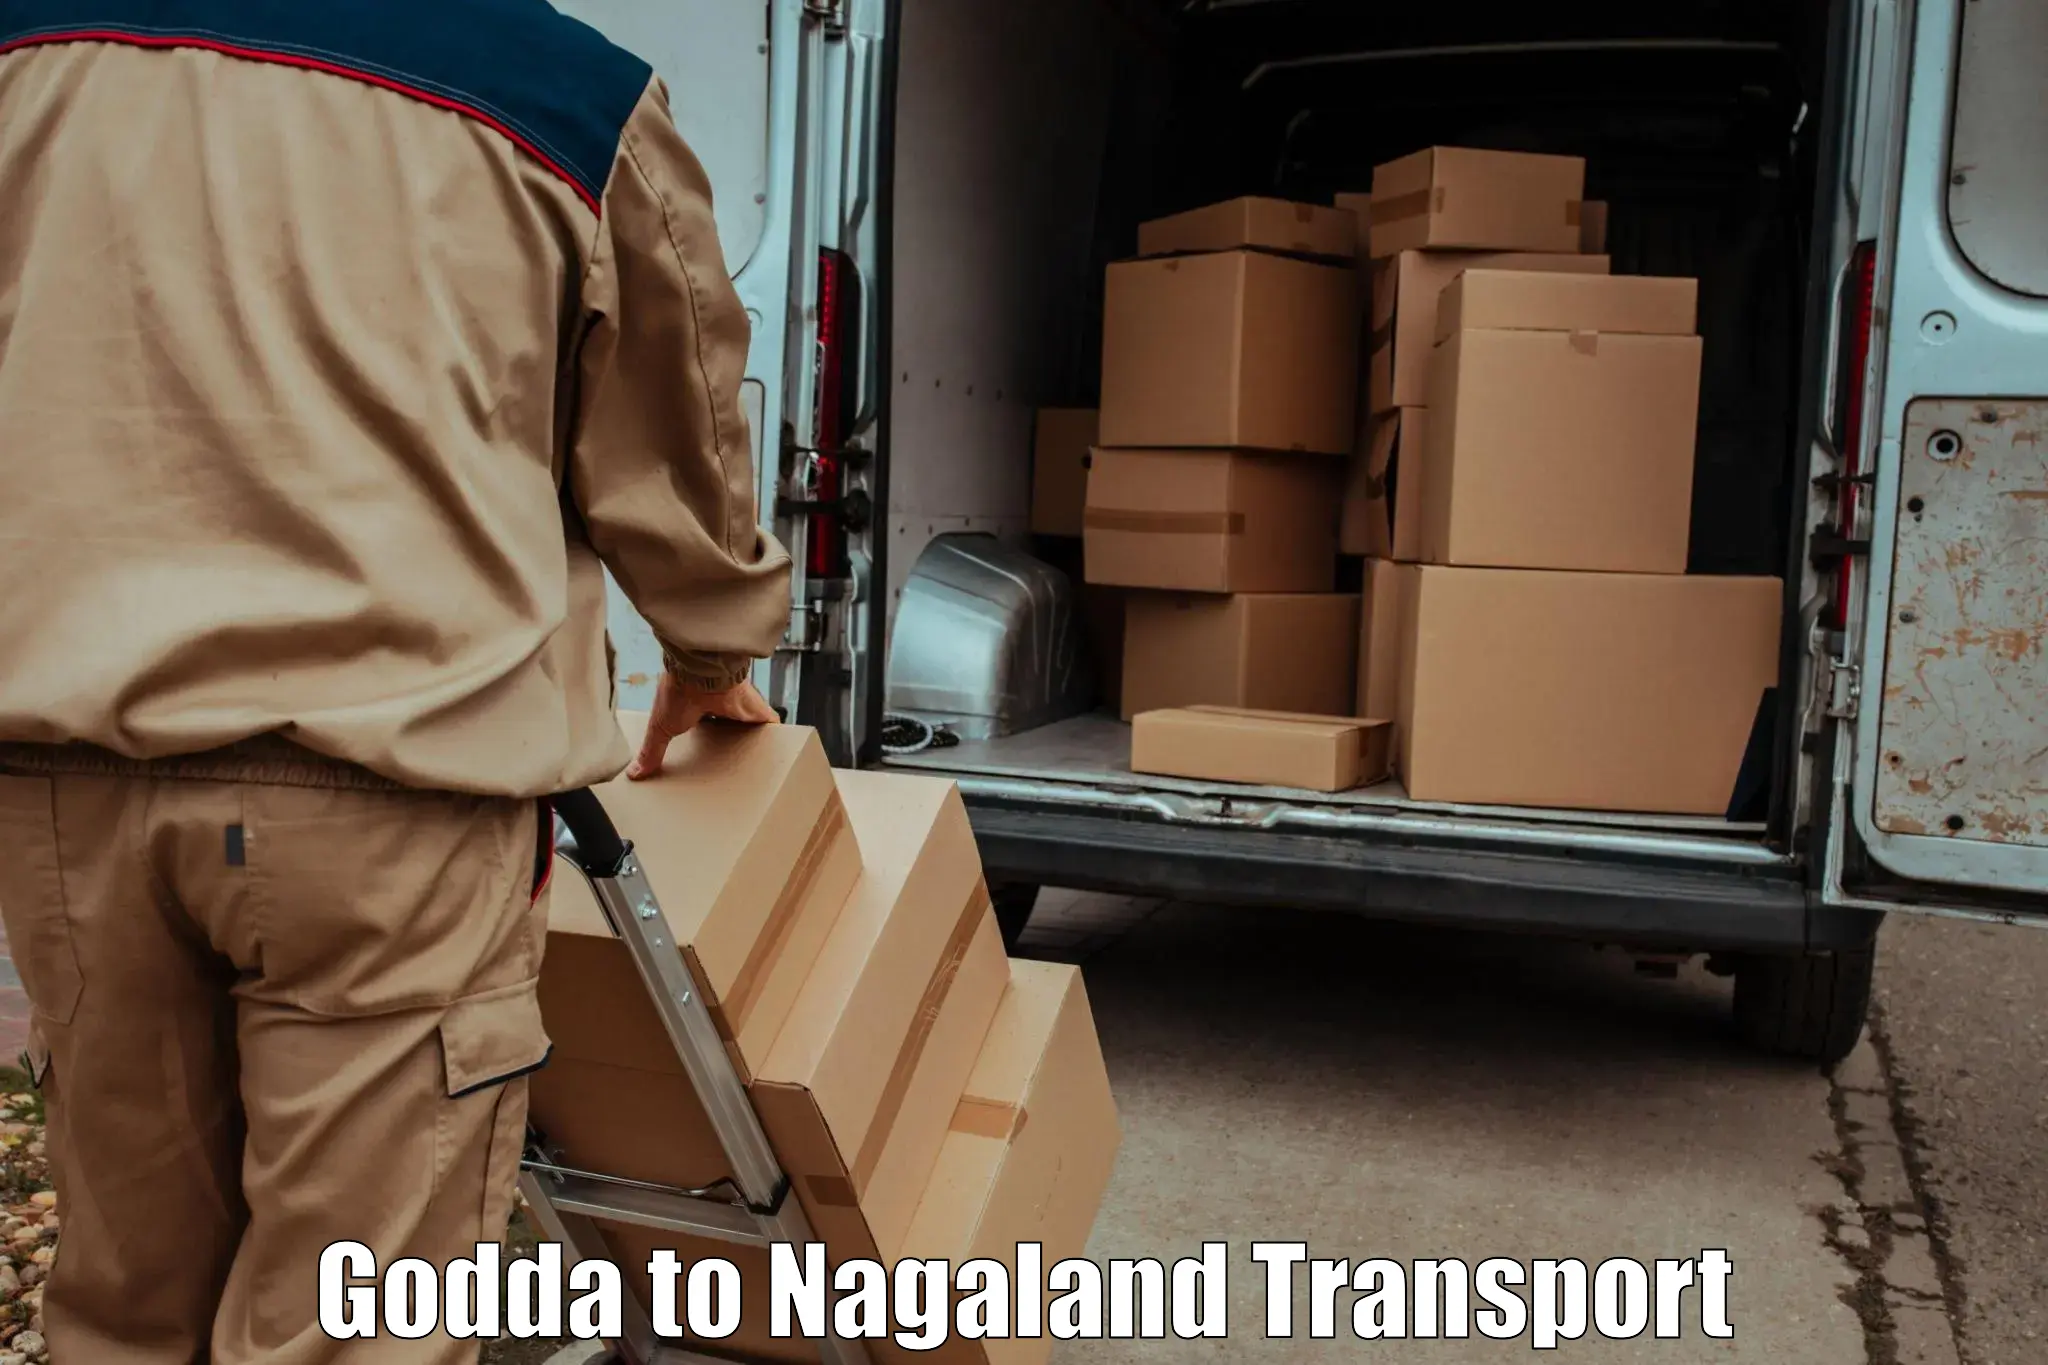 Shipping partner Godda to NIT Nagaland